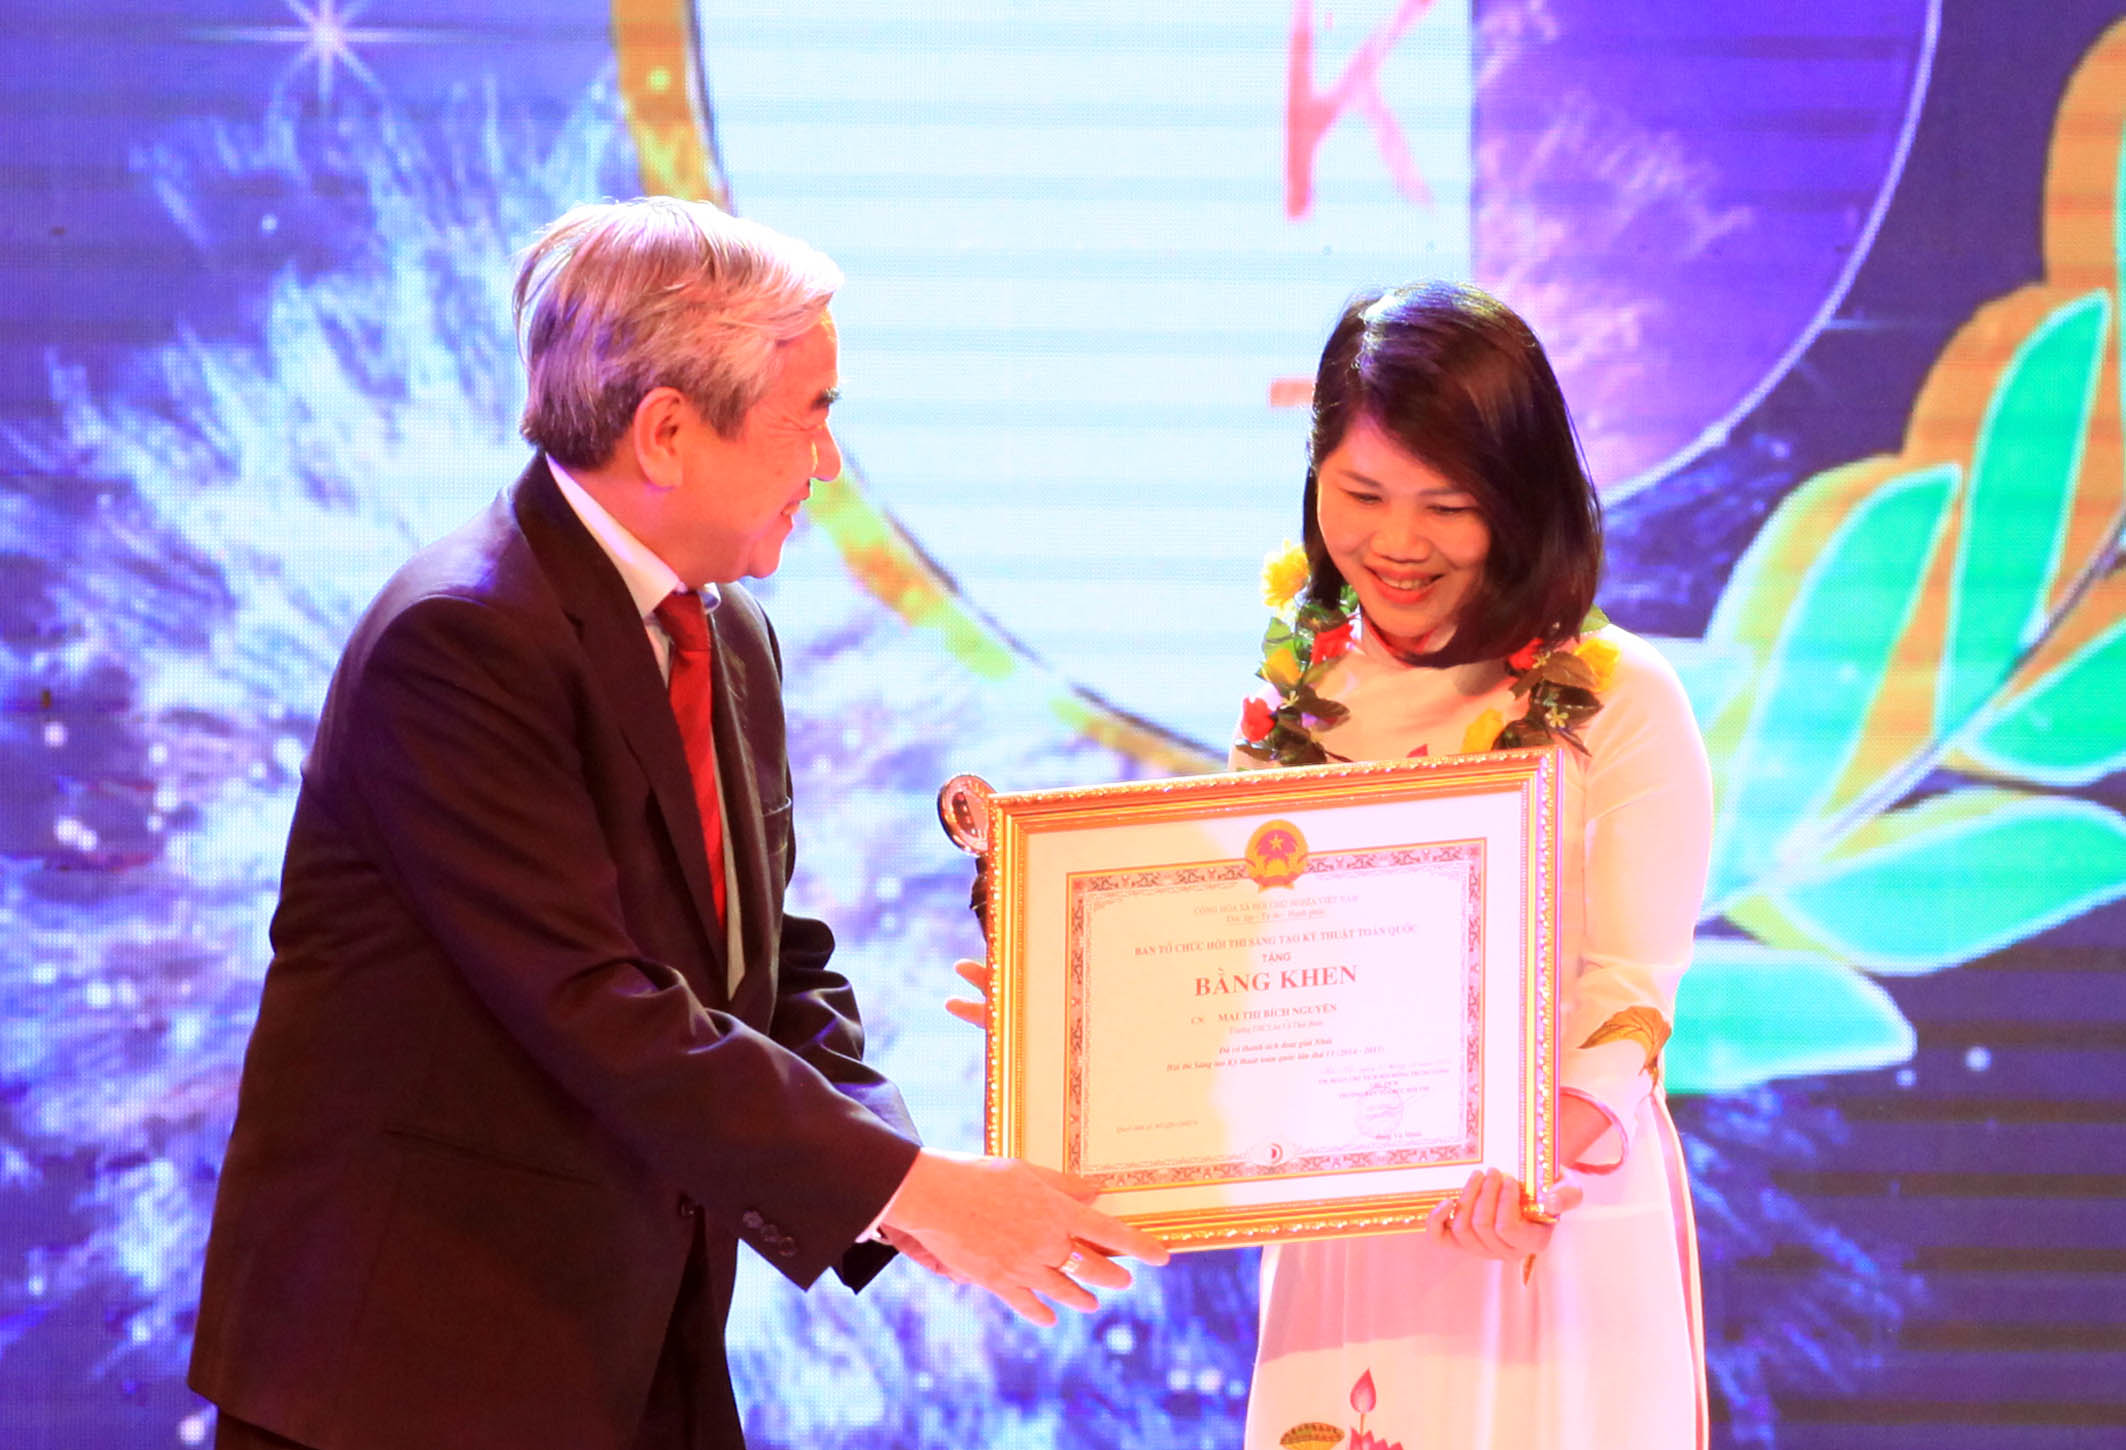 Ông Nguyễn Quân – Bộ trưởng Bộ Khoa học và Công nghệ trao giải nhất cho 6 giải nhất của Hội thi. Ảnh Anh Tuấn.